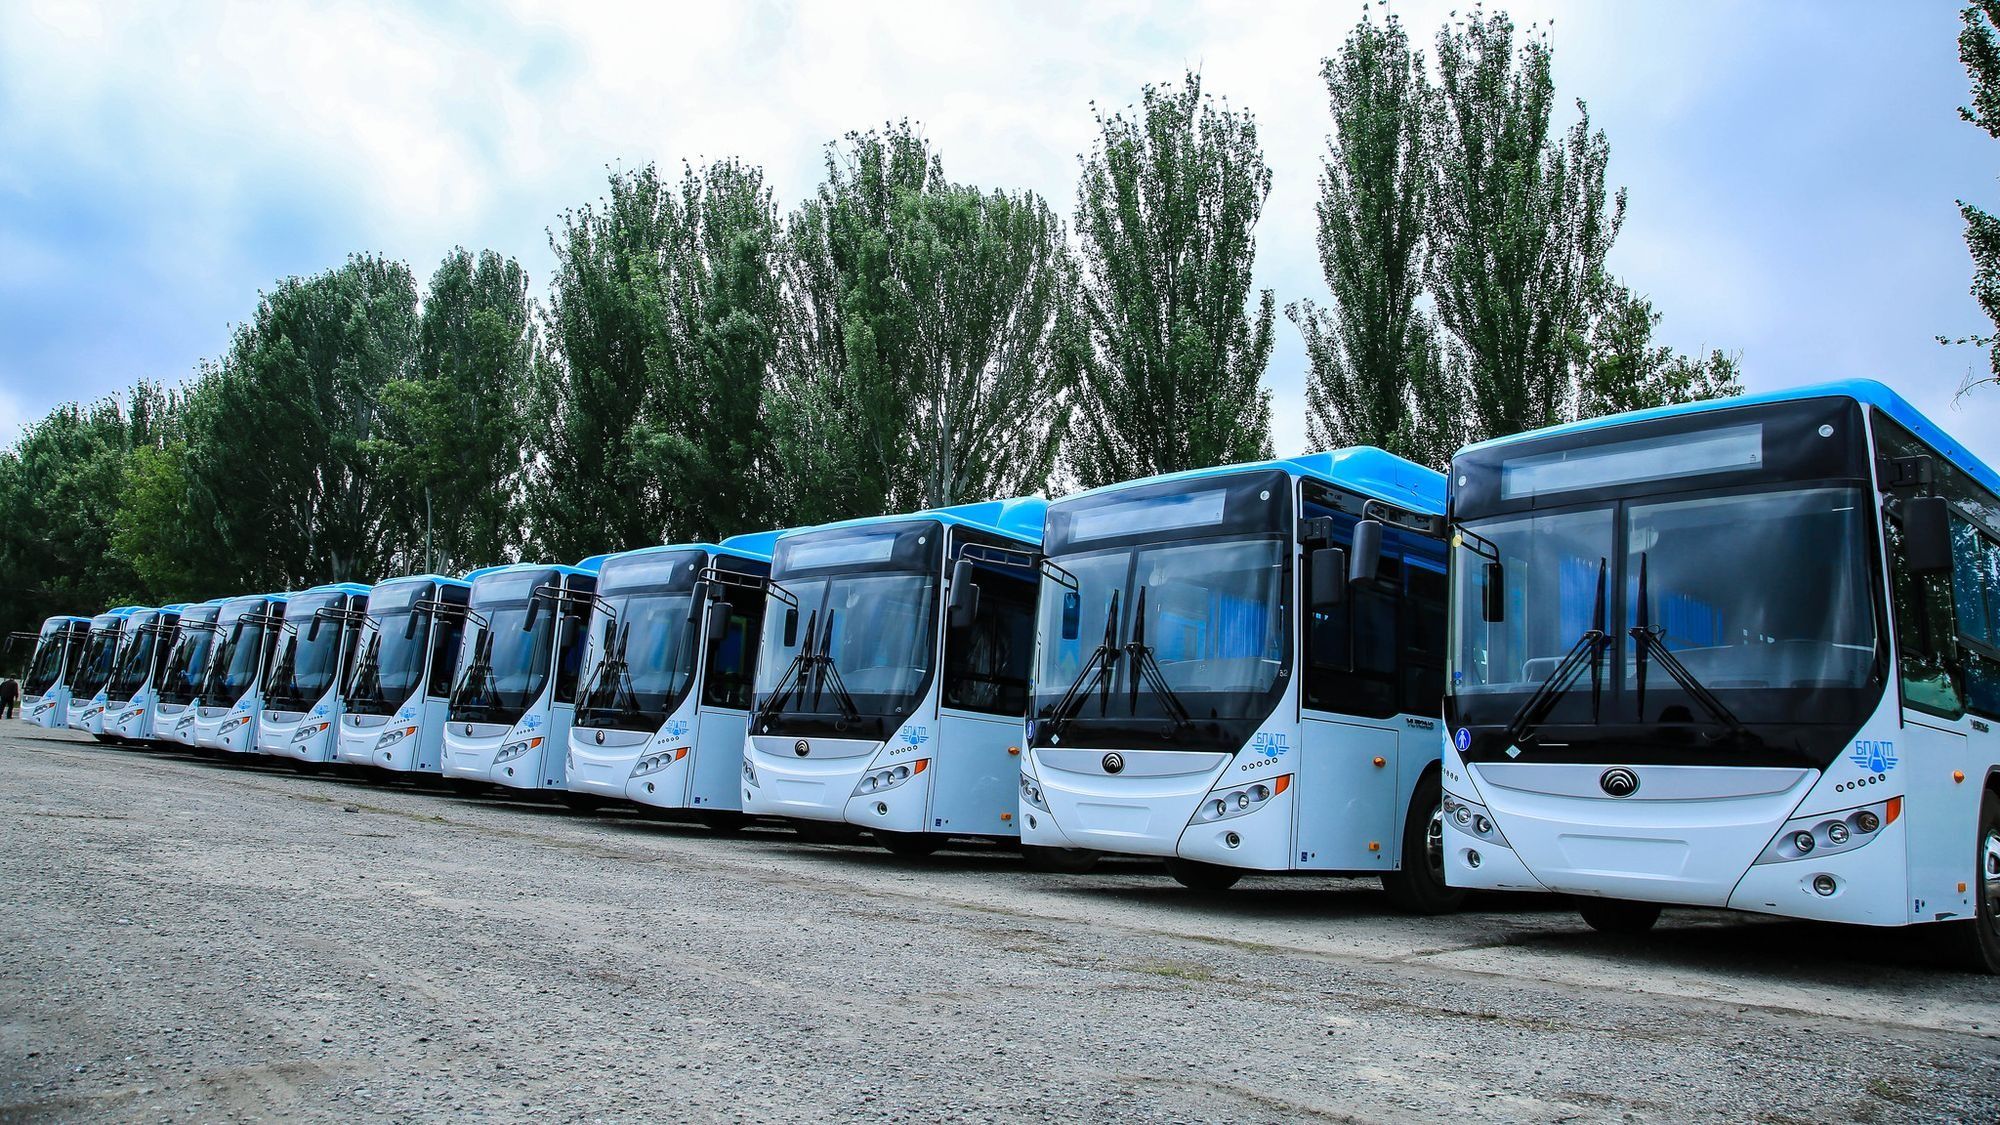 Мэрия Бишкека объявила конкурс на расширение парковки автобусного парка